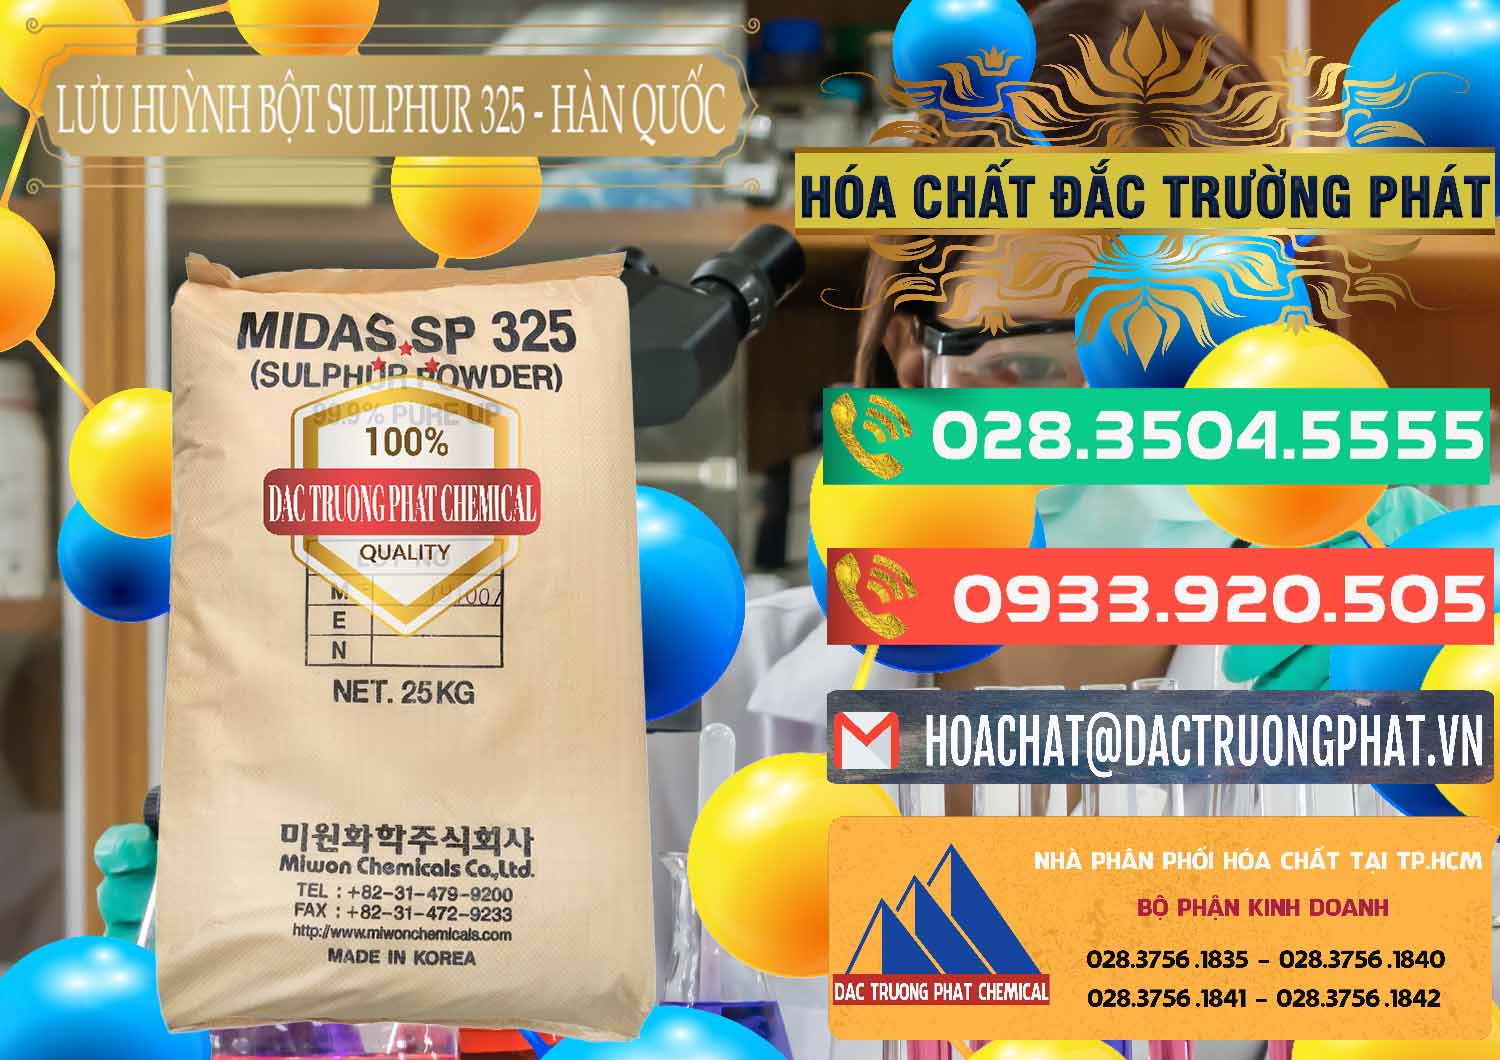 Cty chuyên bán & phân phối Lưu huỳnh Bột - Sulfur Powder Midas SP 325 Hàn Quốc Korea - 0198 - Phân phối _ bán hóa chất tại TP.HCM - congtyhoachat.com.vn